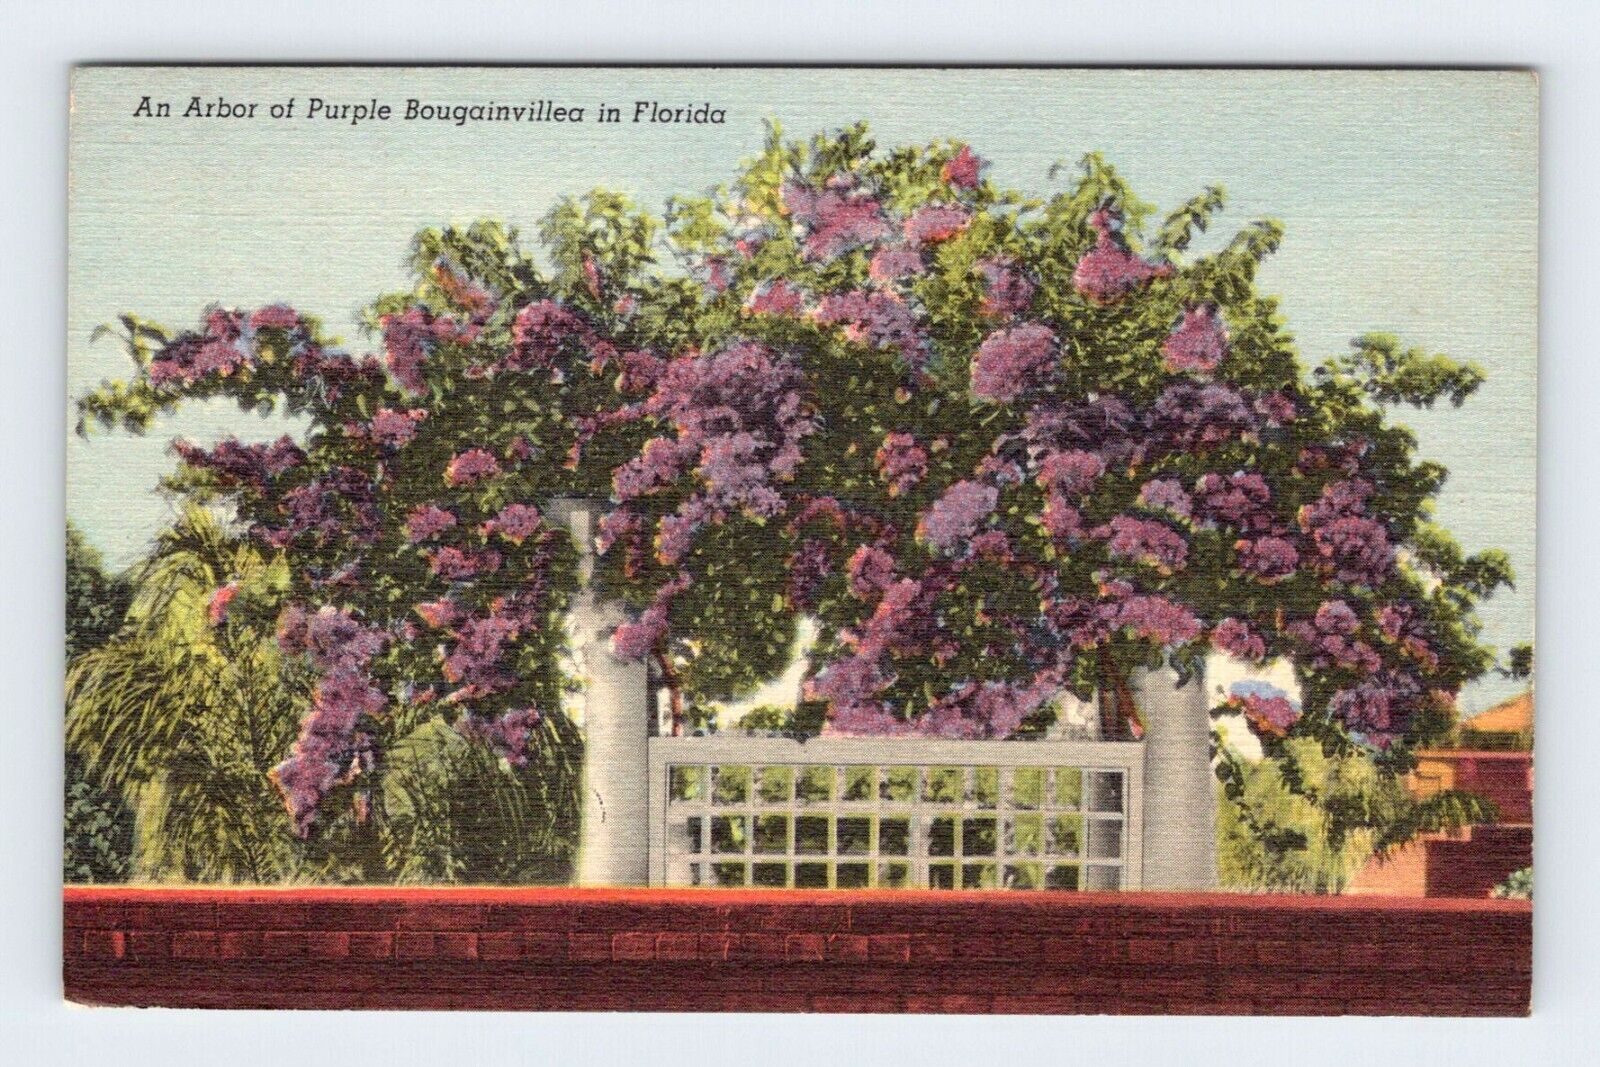 Post Office Key West Florida Vintage Linen Postcard BRY4